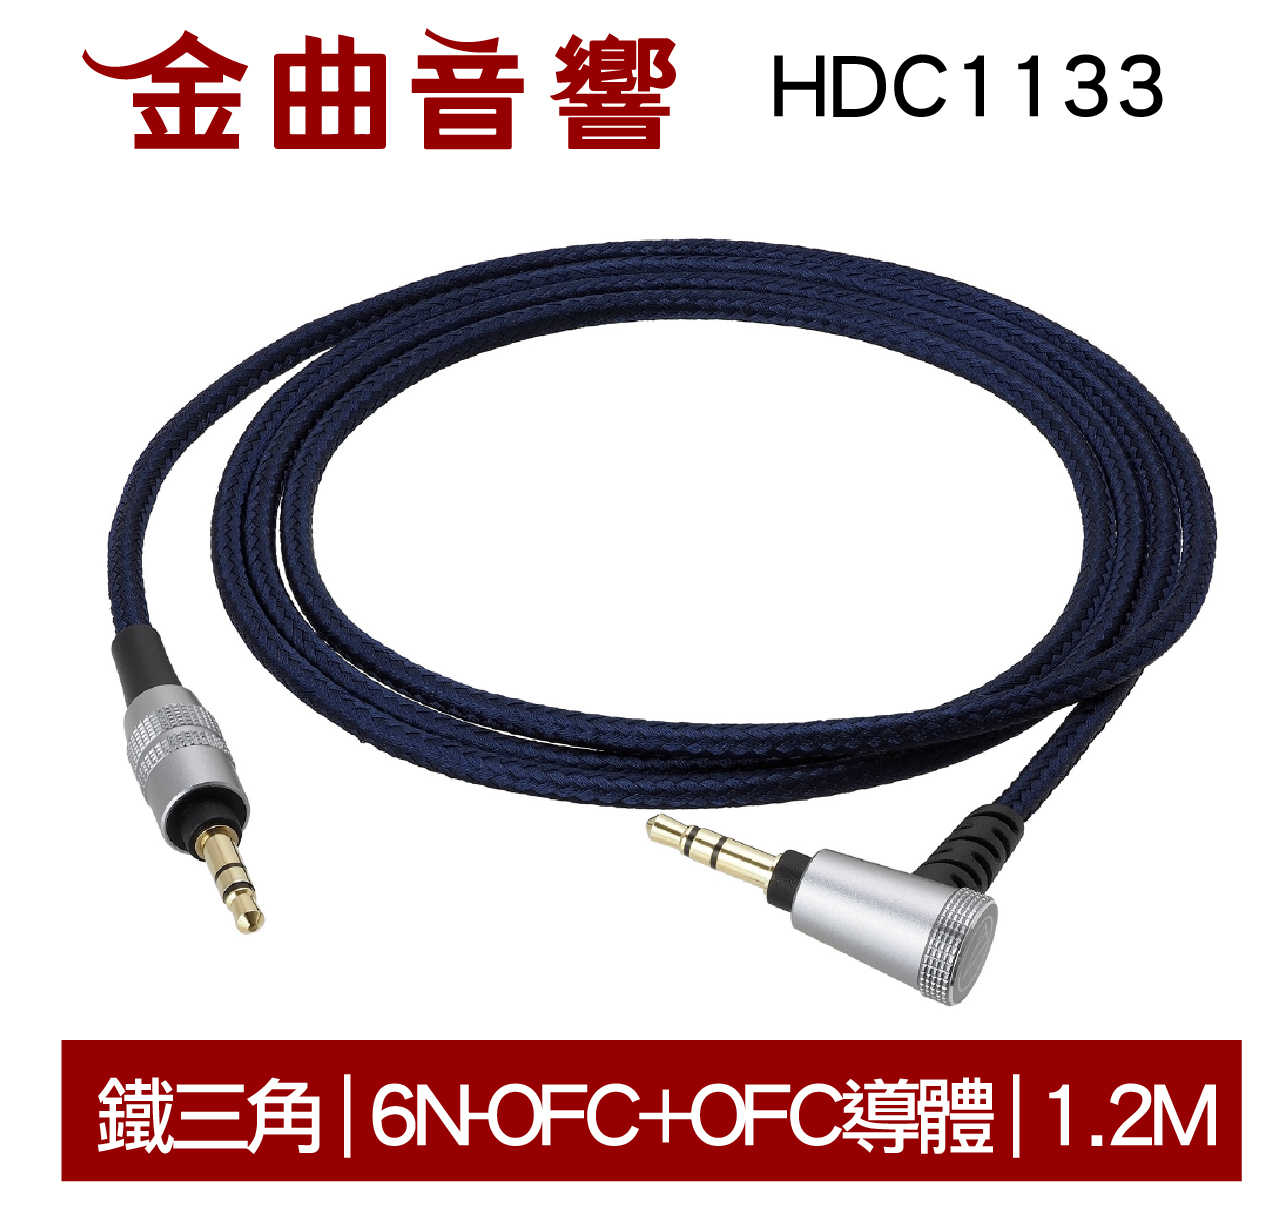 鐵三角 HDC1133 6N-OFC+OFC導體 高純度銅 3.5MM 耳罩耳機升級線 | 金曲音響